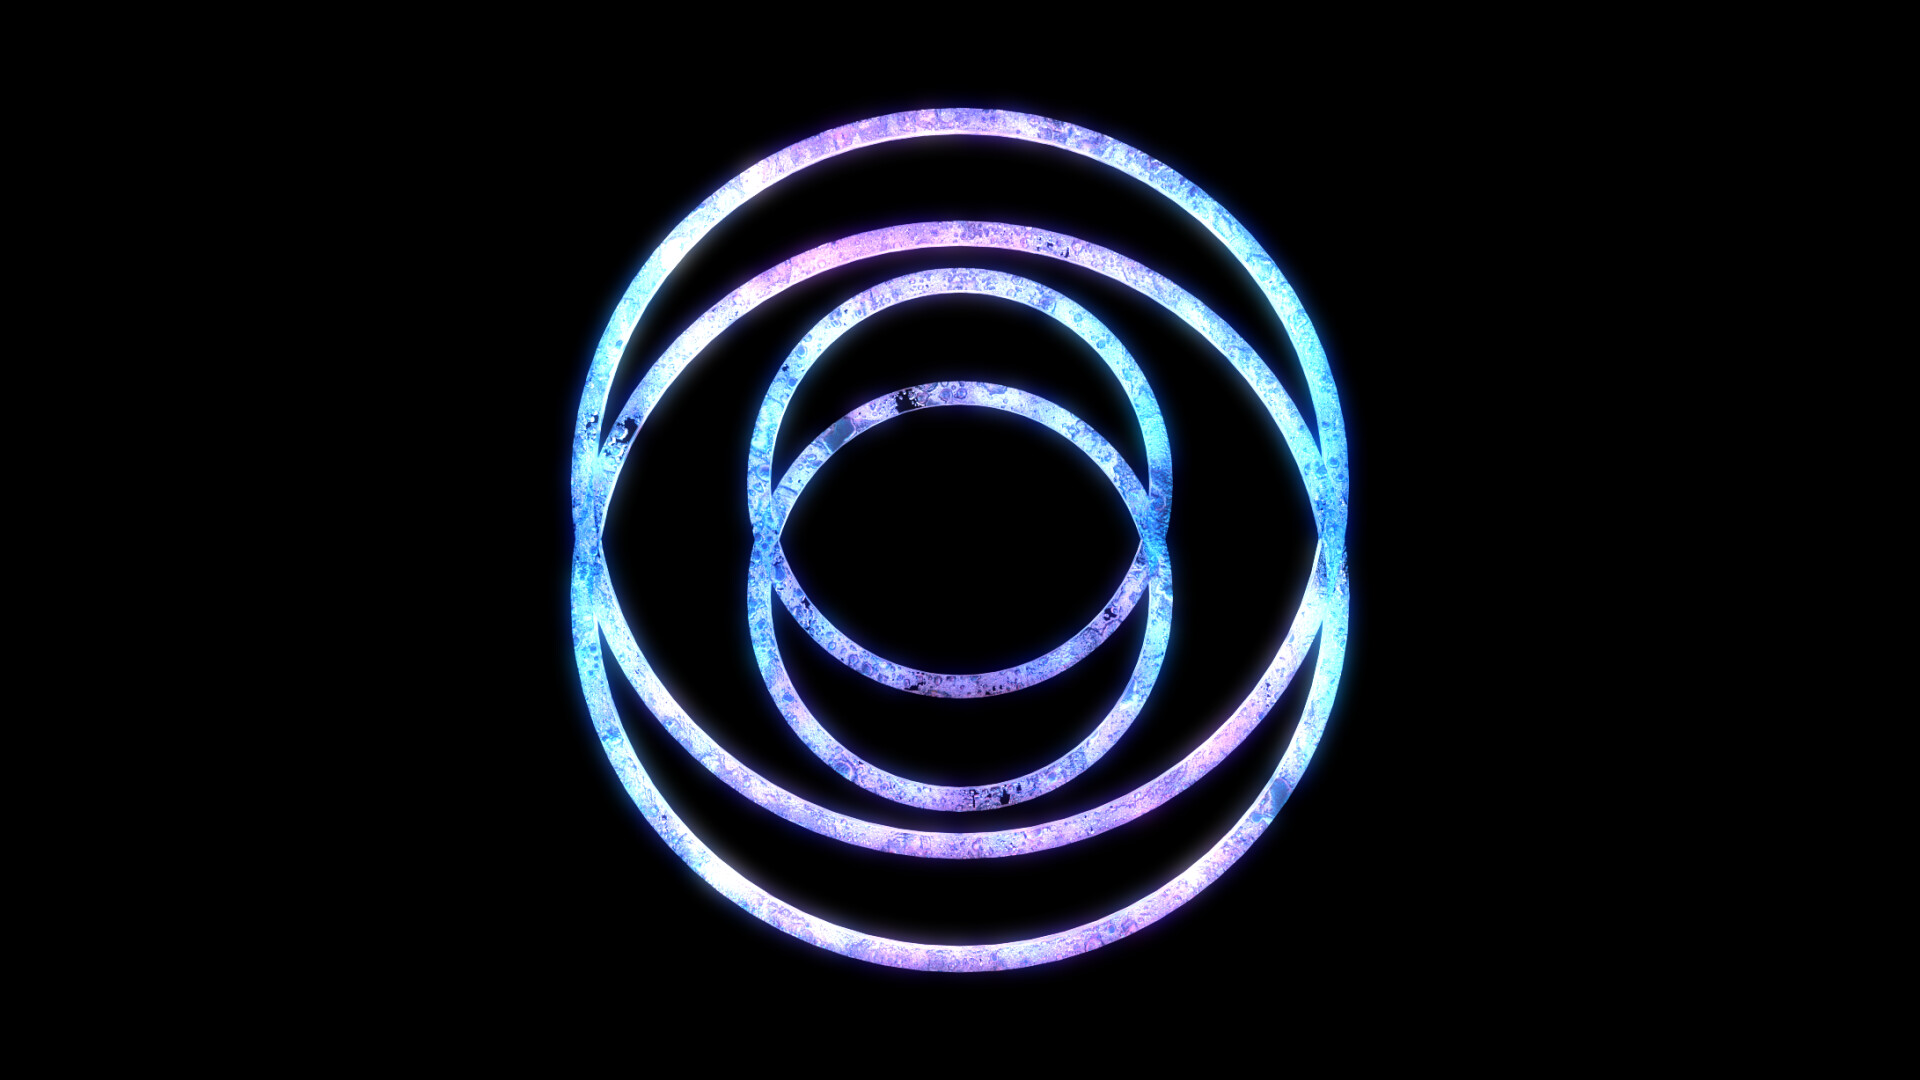 ArtStation - Crystal logo